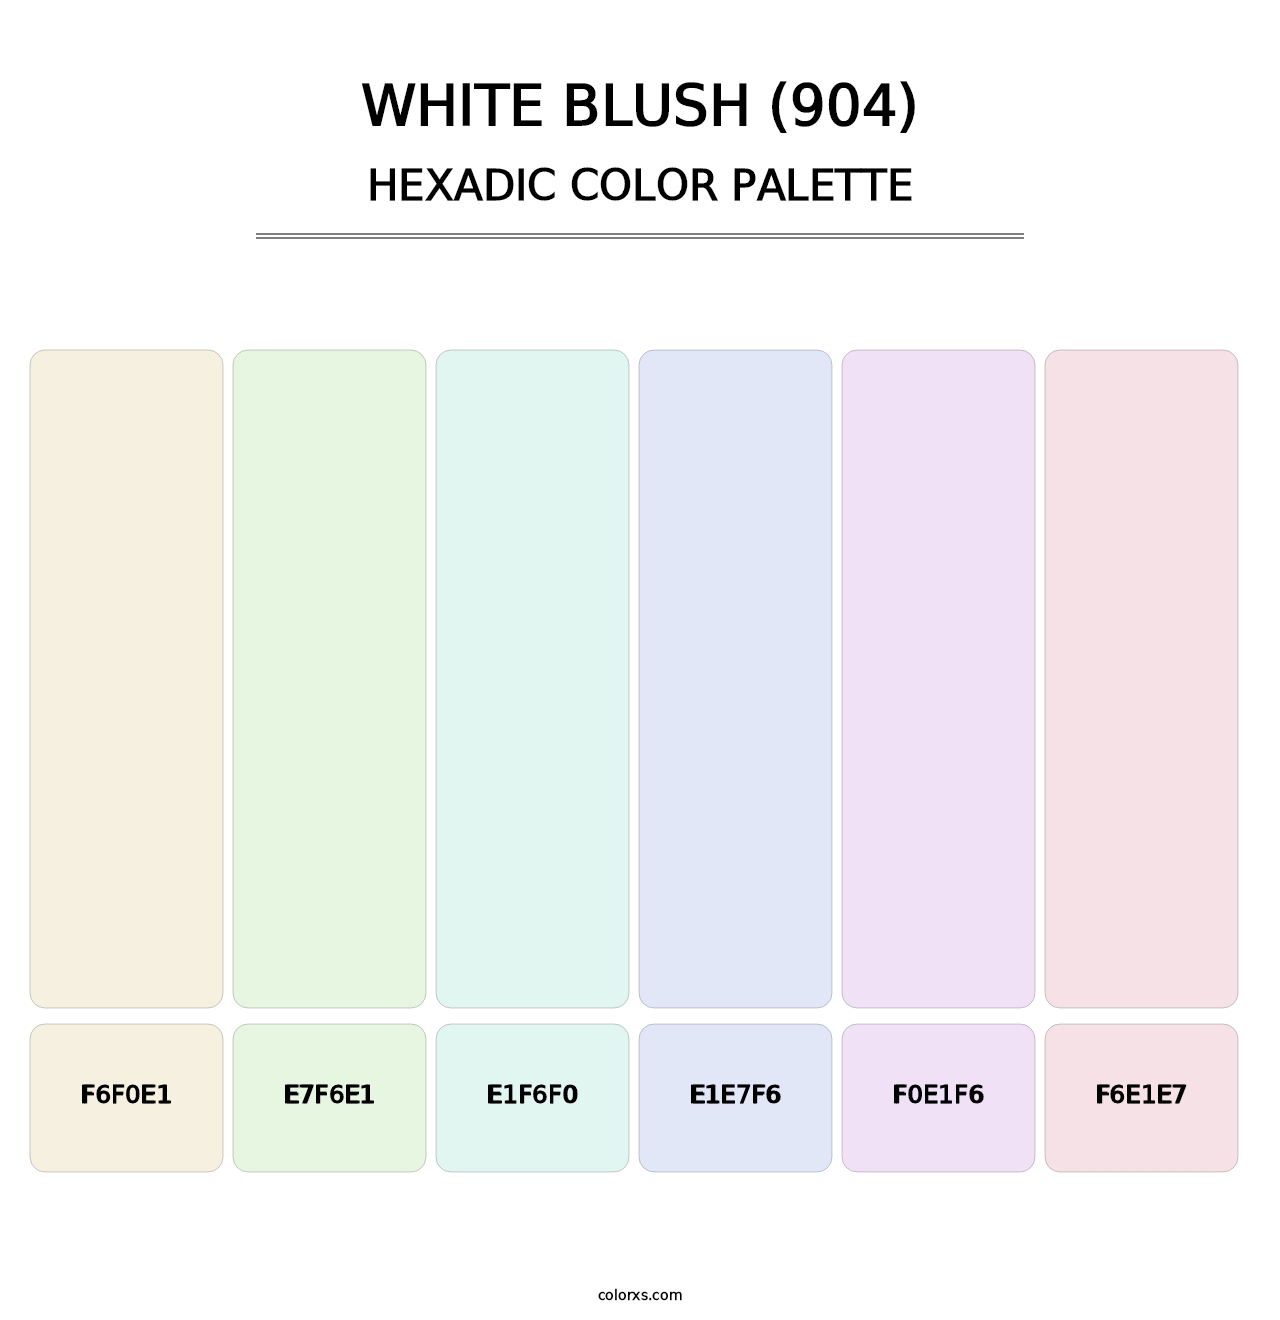 White Blush (904) - Hexadic Color Palette